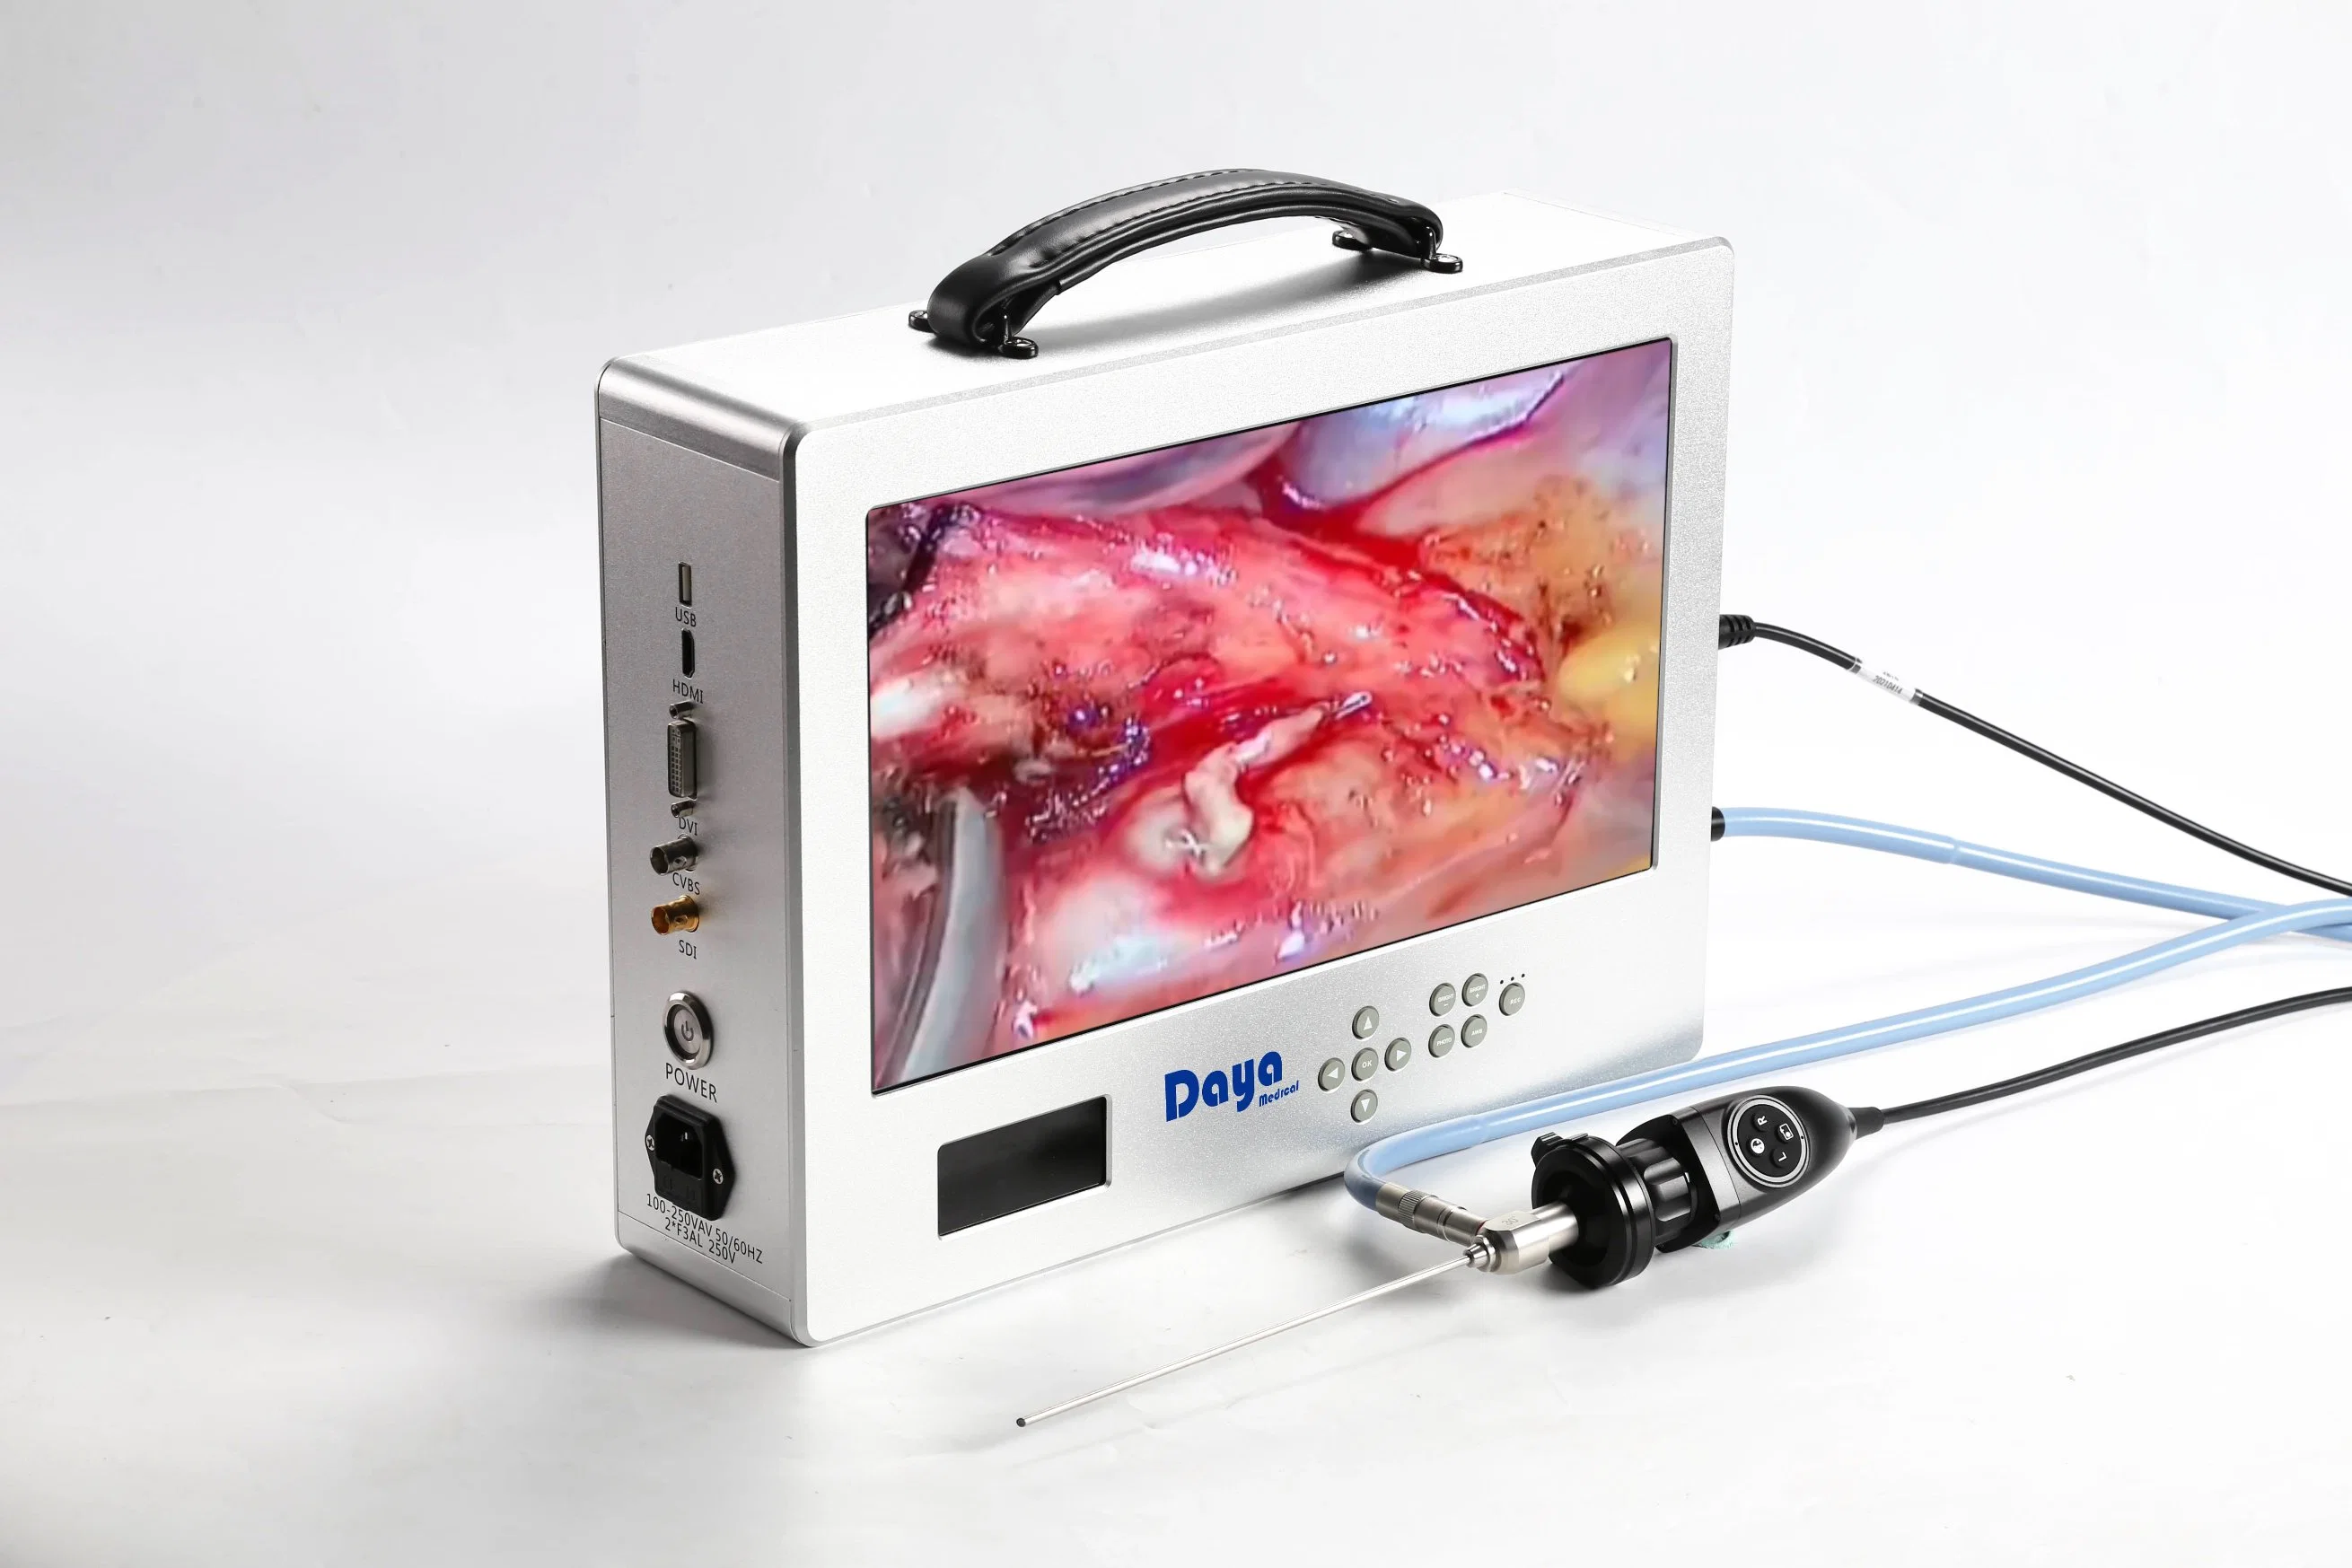 Appareil-photo Ent chirurgie de haute qualité caméra inspection système d'endoscope médical Moniteur d'endoscopie